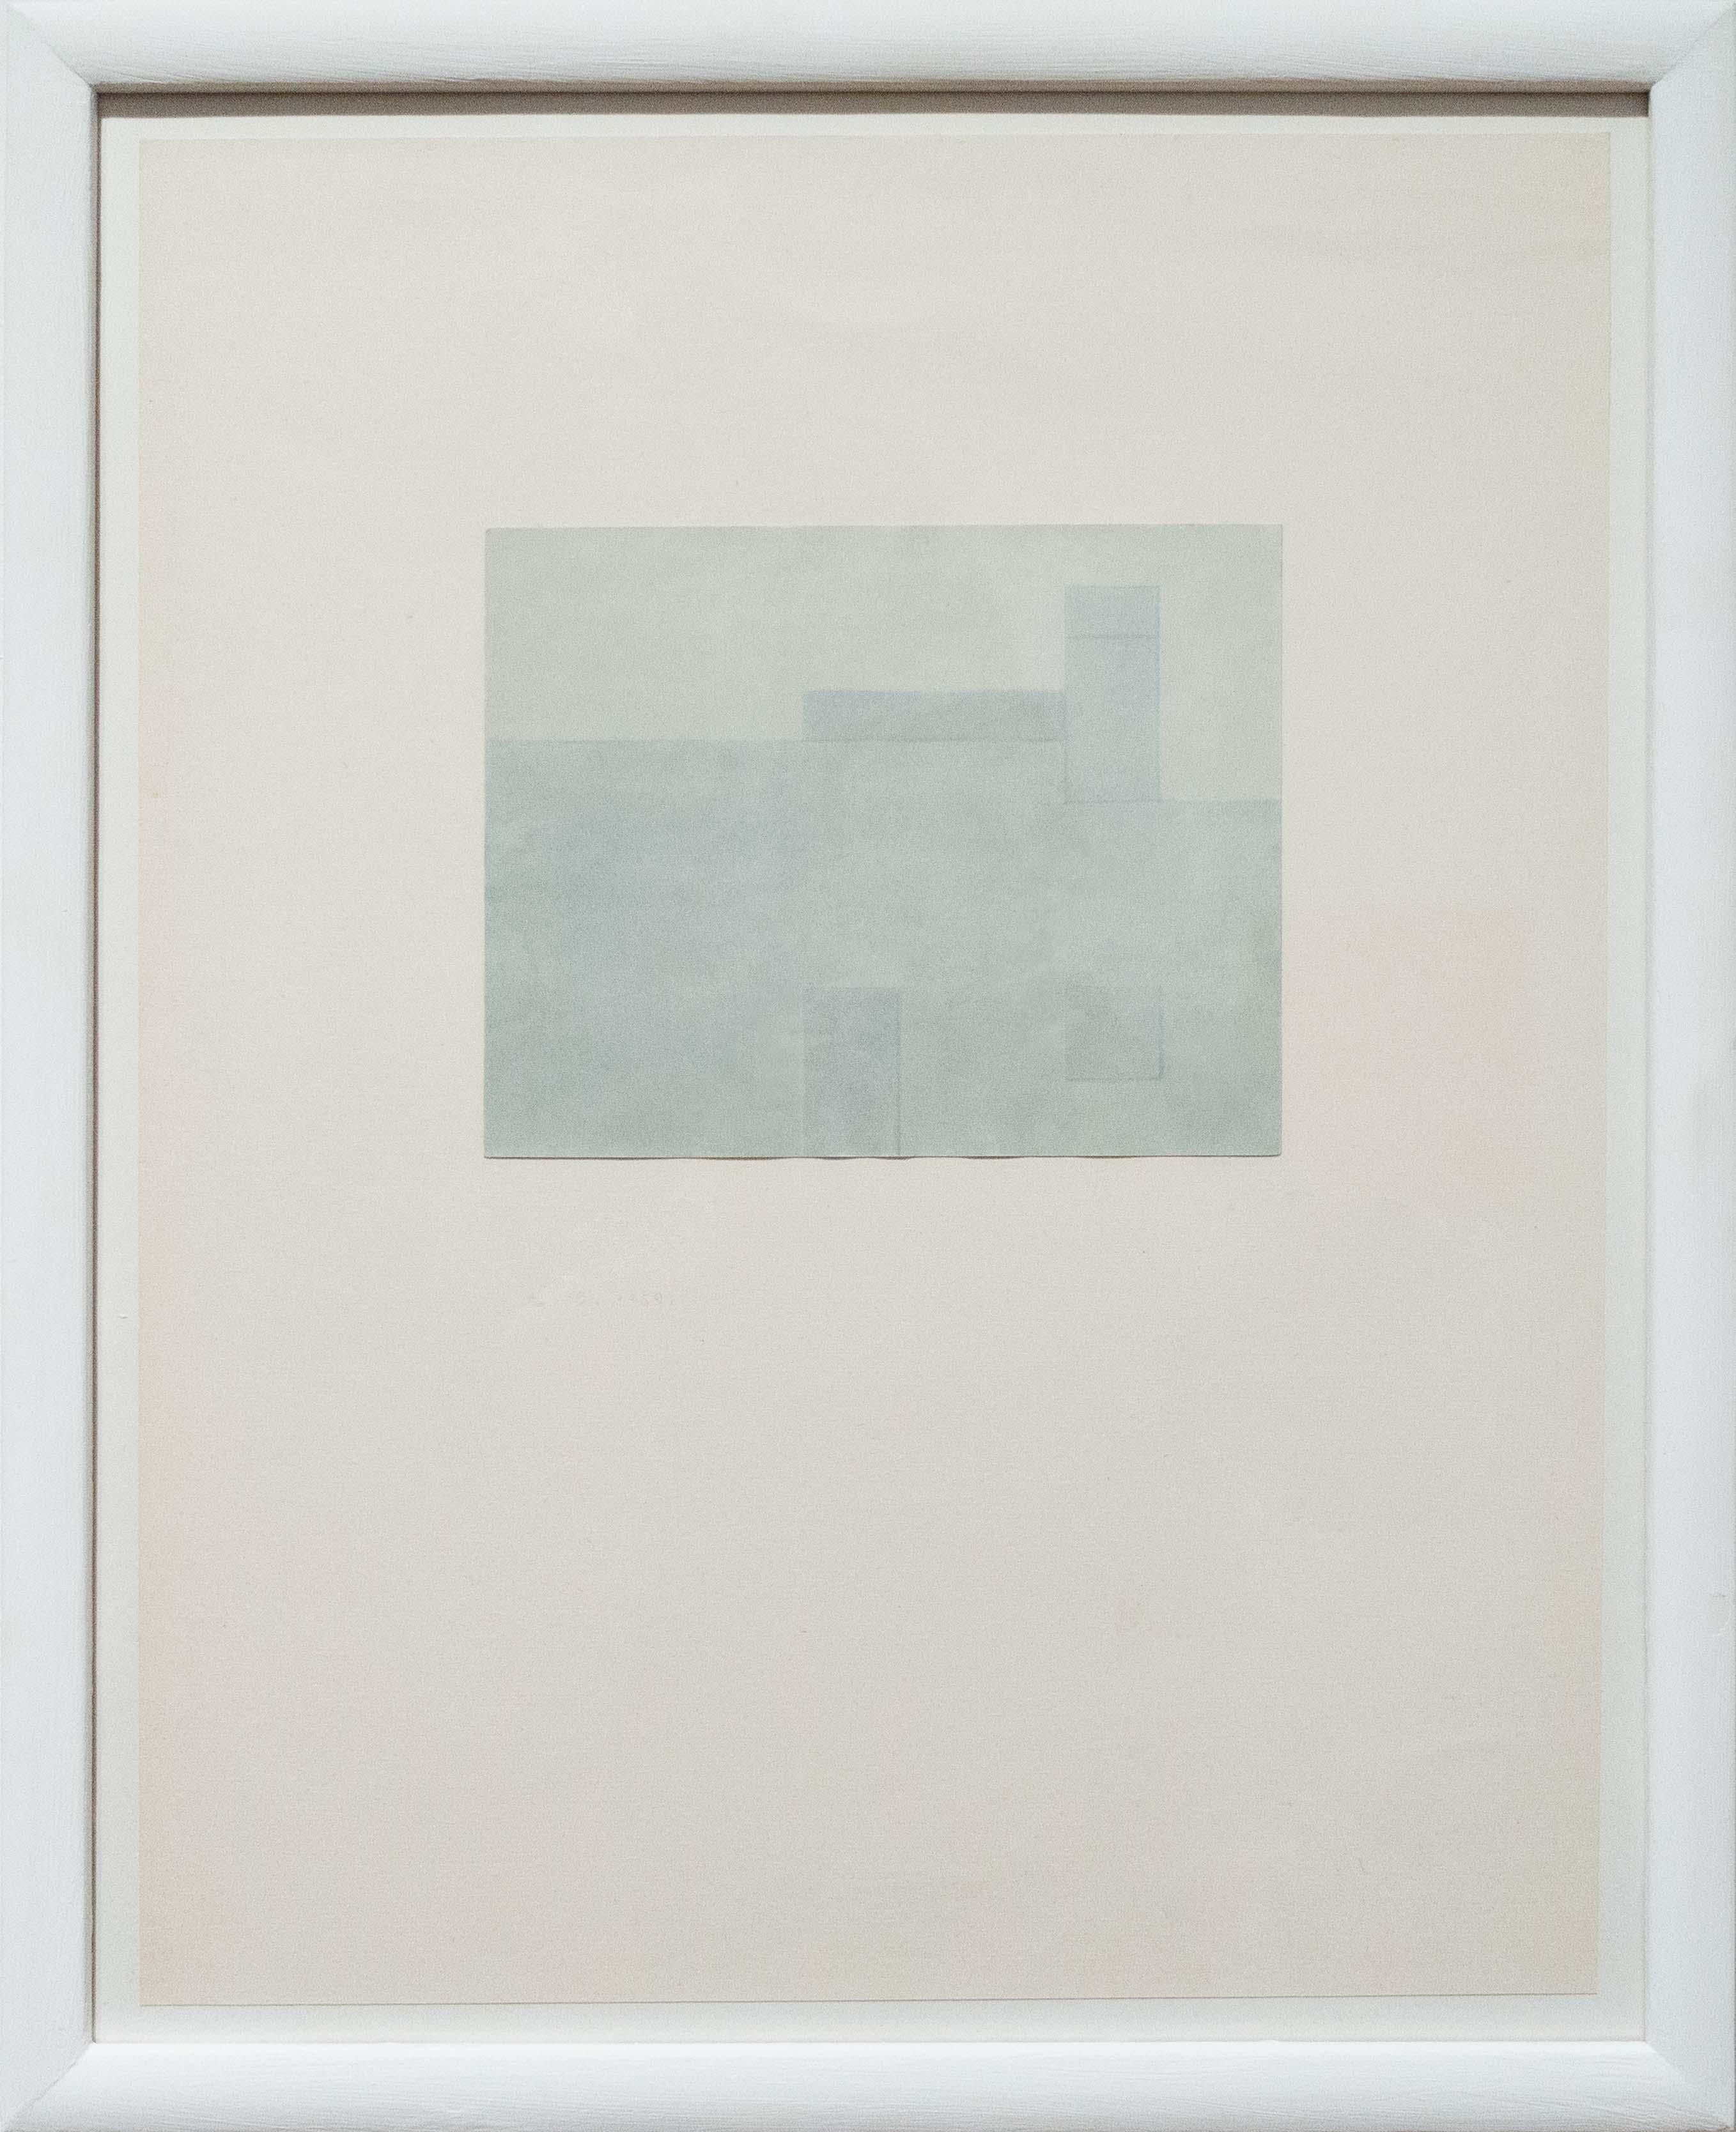 Senza Titolo, astrazione, arte italiana, minimalismo, paesaggio, 1959 - Abstract Art by Antonio Calderara